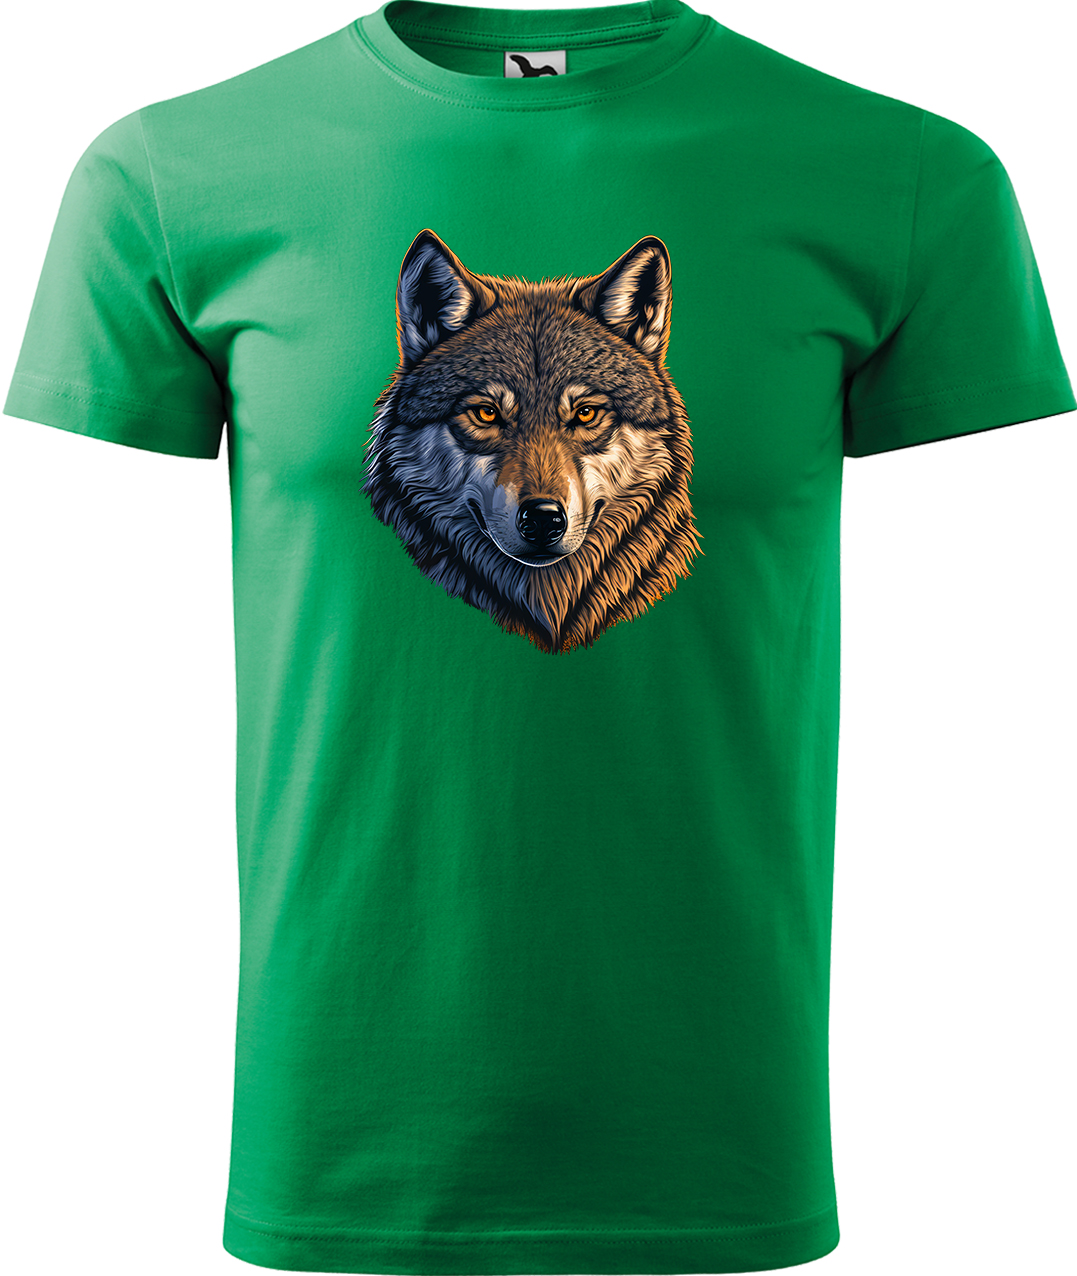 Pánské tričko s vlkem - Hlava vlka Velikost: XL, Barva: Středně zelená (16), Střih: pánský